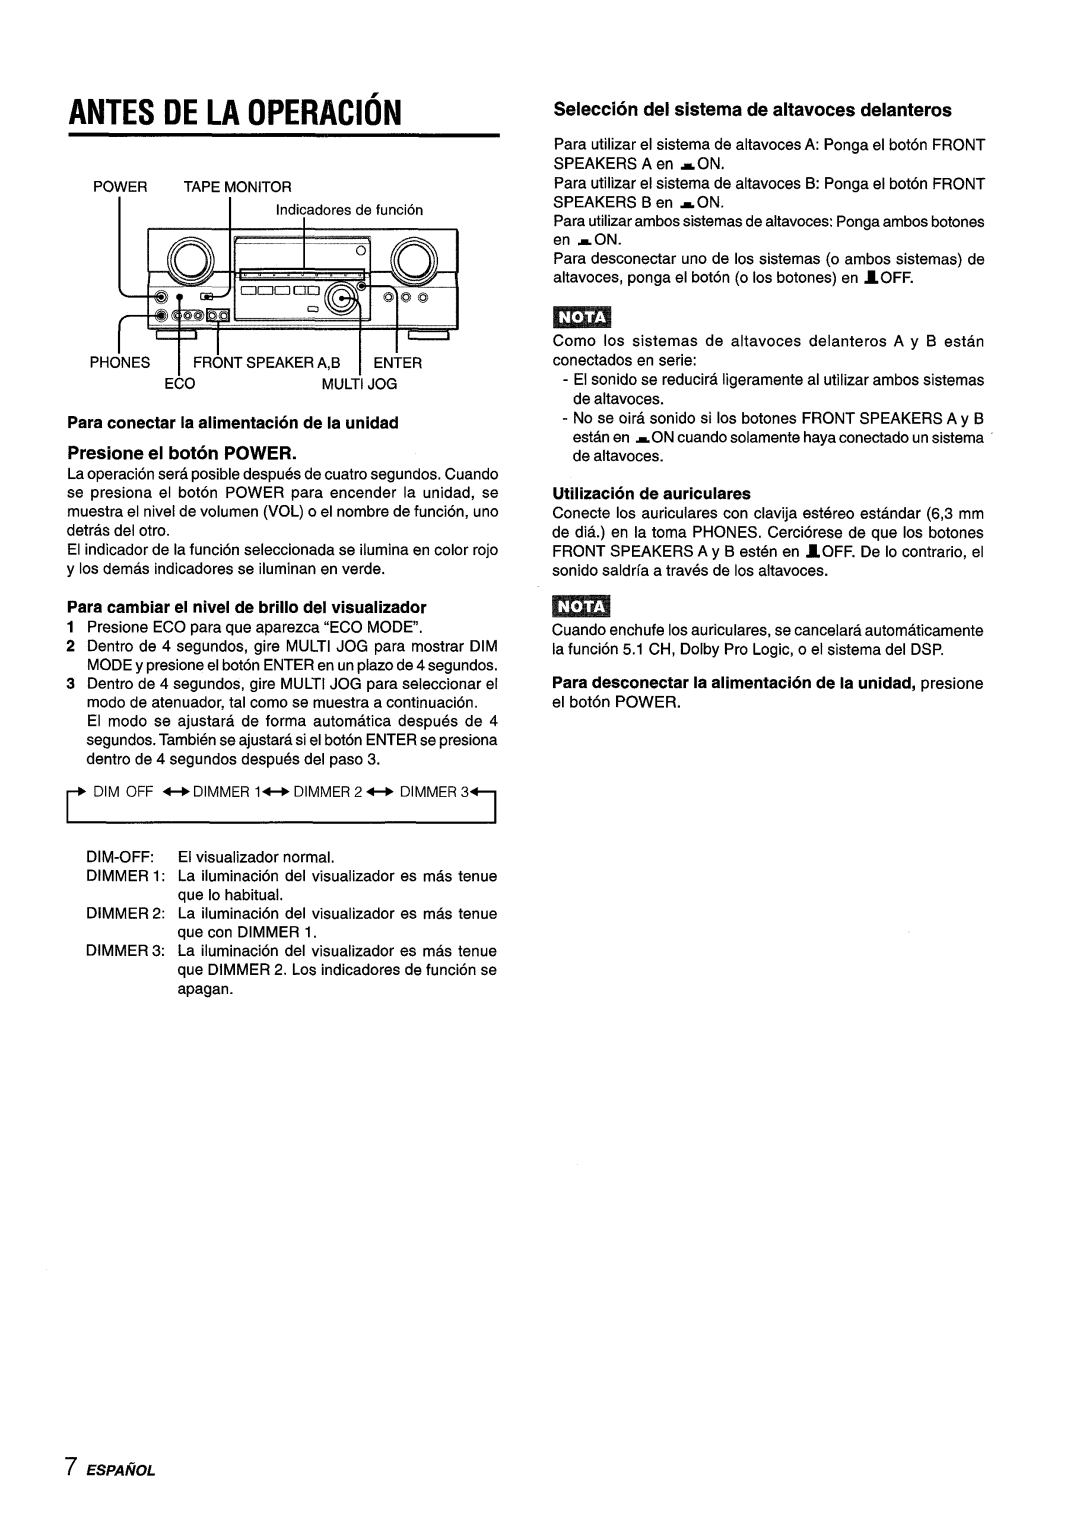 Aiwa AV-D55 manual Antes De La Operacion, Seleccion del sistema de altavoces delanteros, Utilization de auriculares 